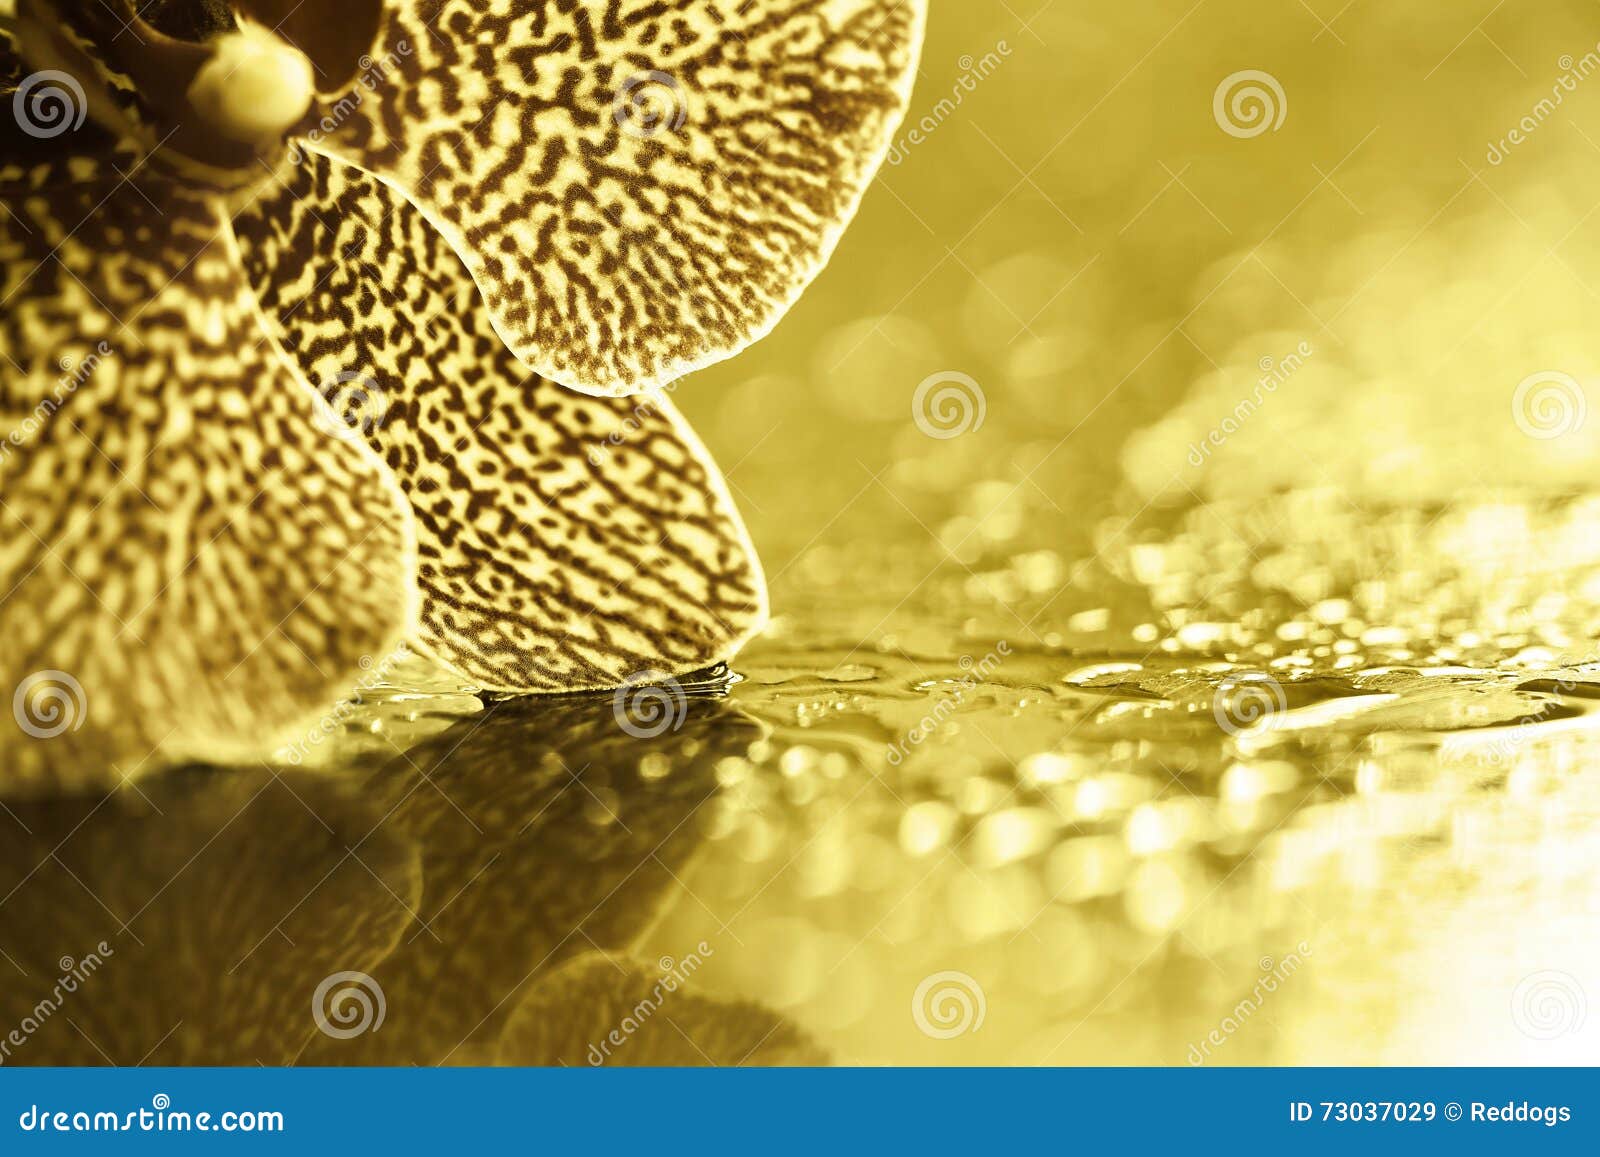 Flor dourada da orquídea imagem de stock. Imagem de flor - 73037029